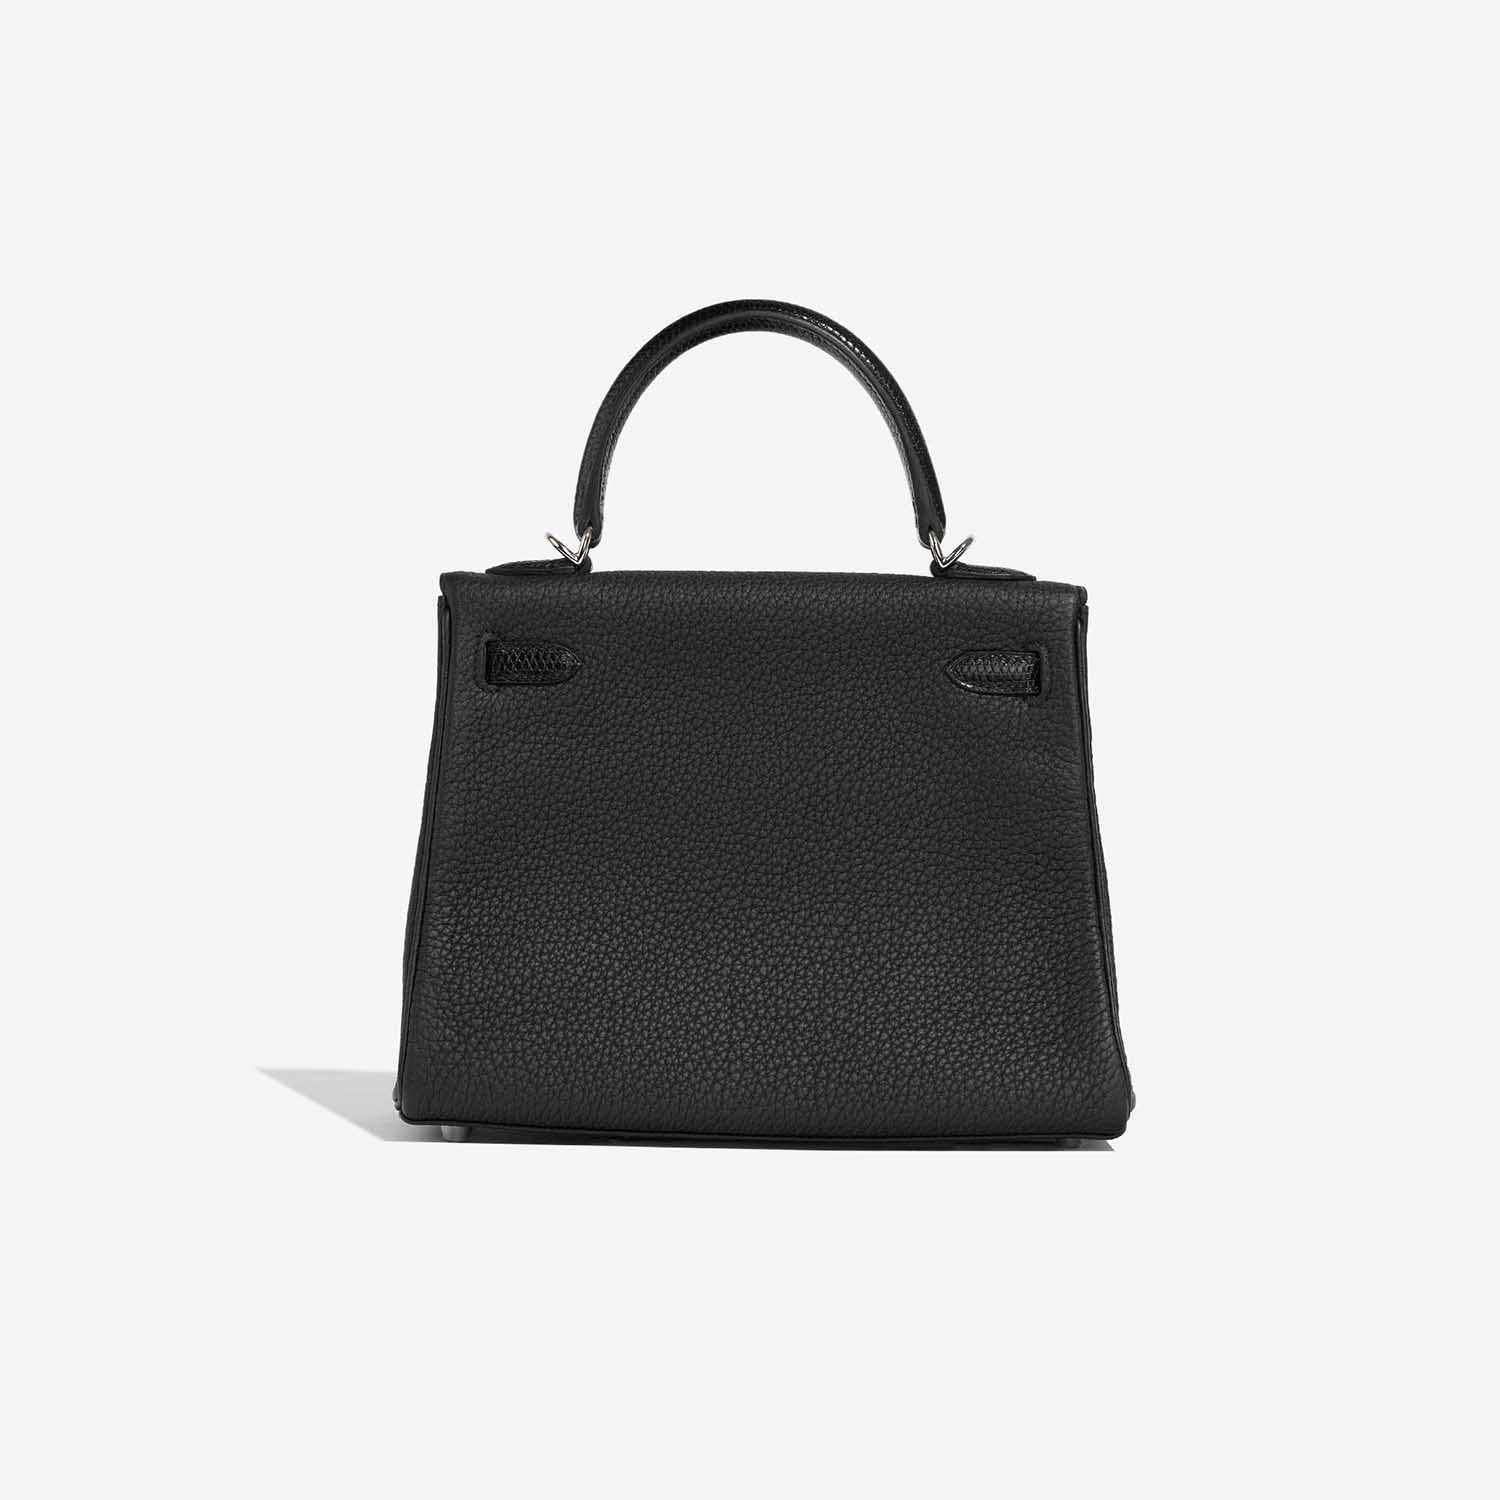 Hermès KellyTouch 25 Black Back | Verkaufen Sie Ihre Designer-Tasche auf Saclab.com